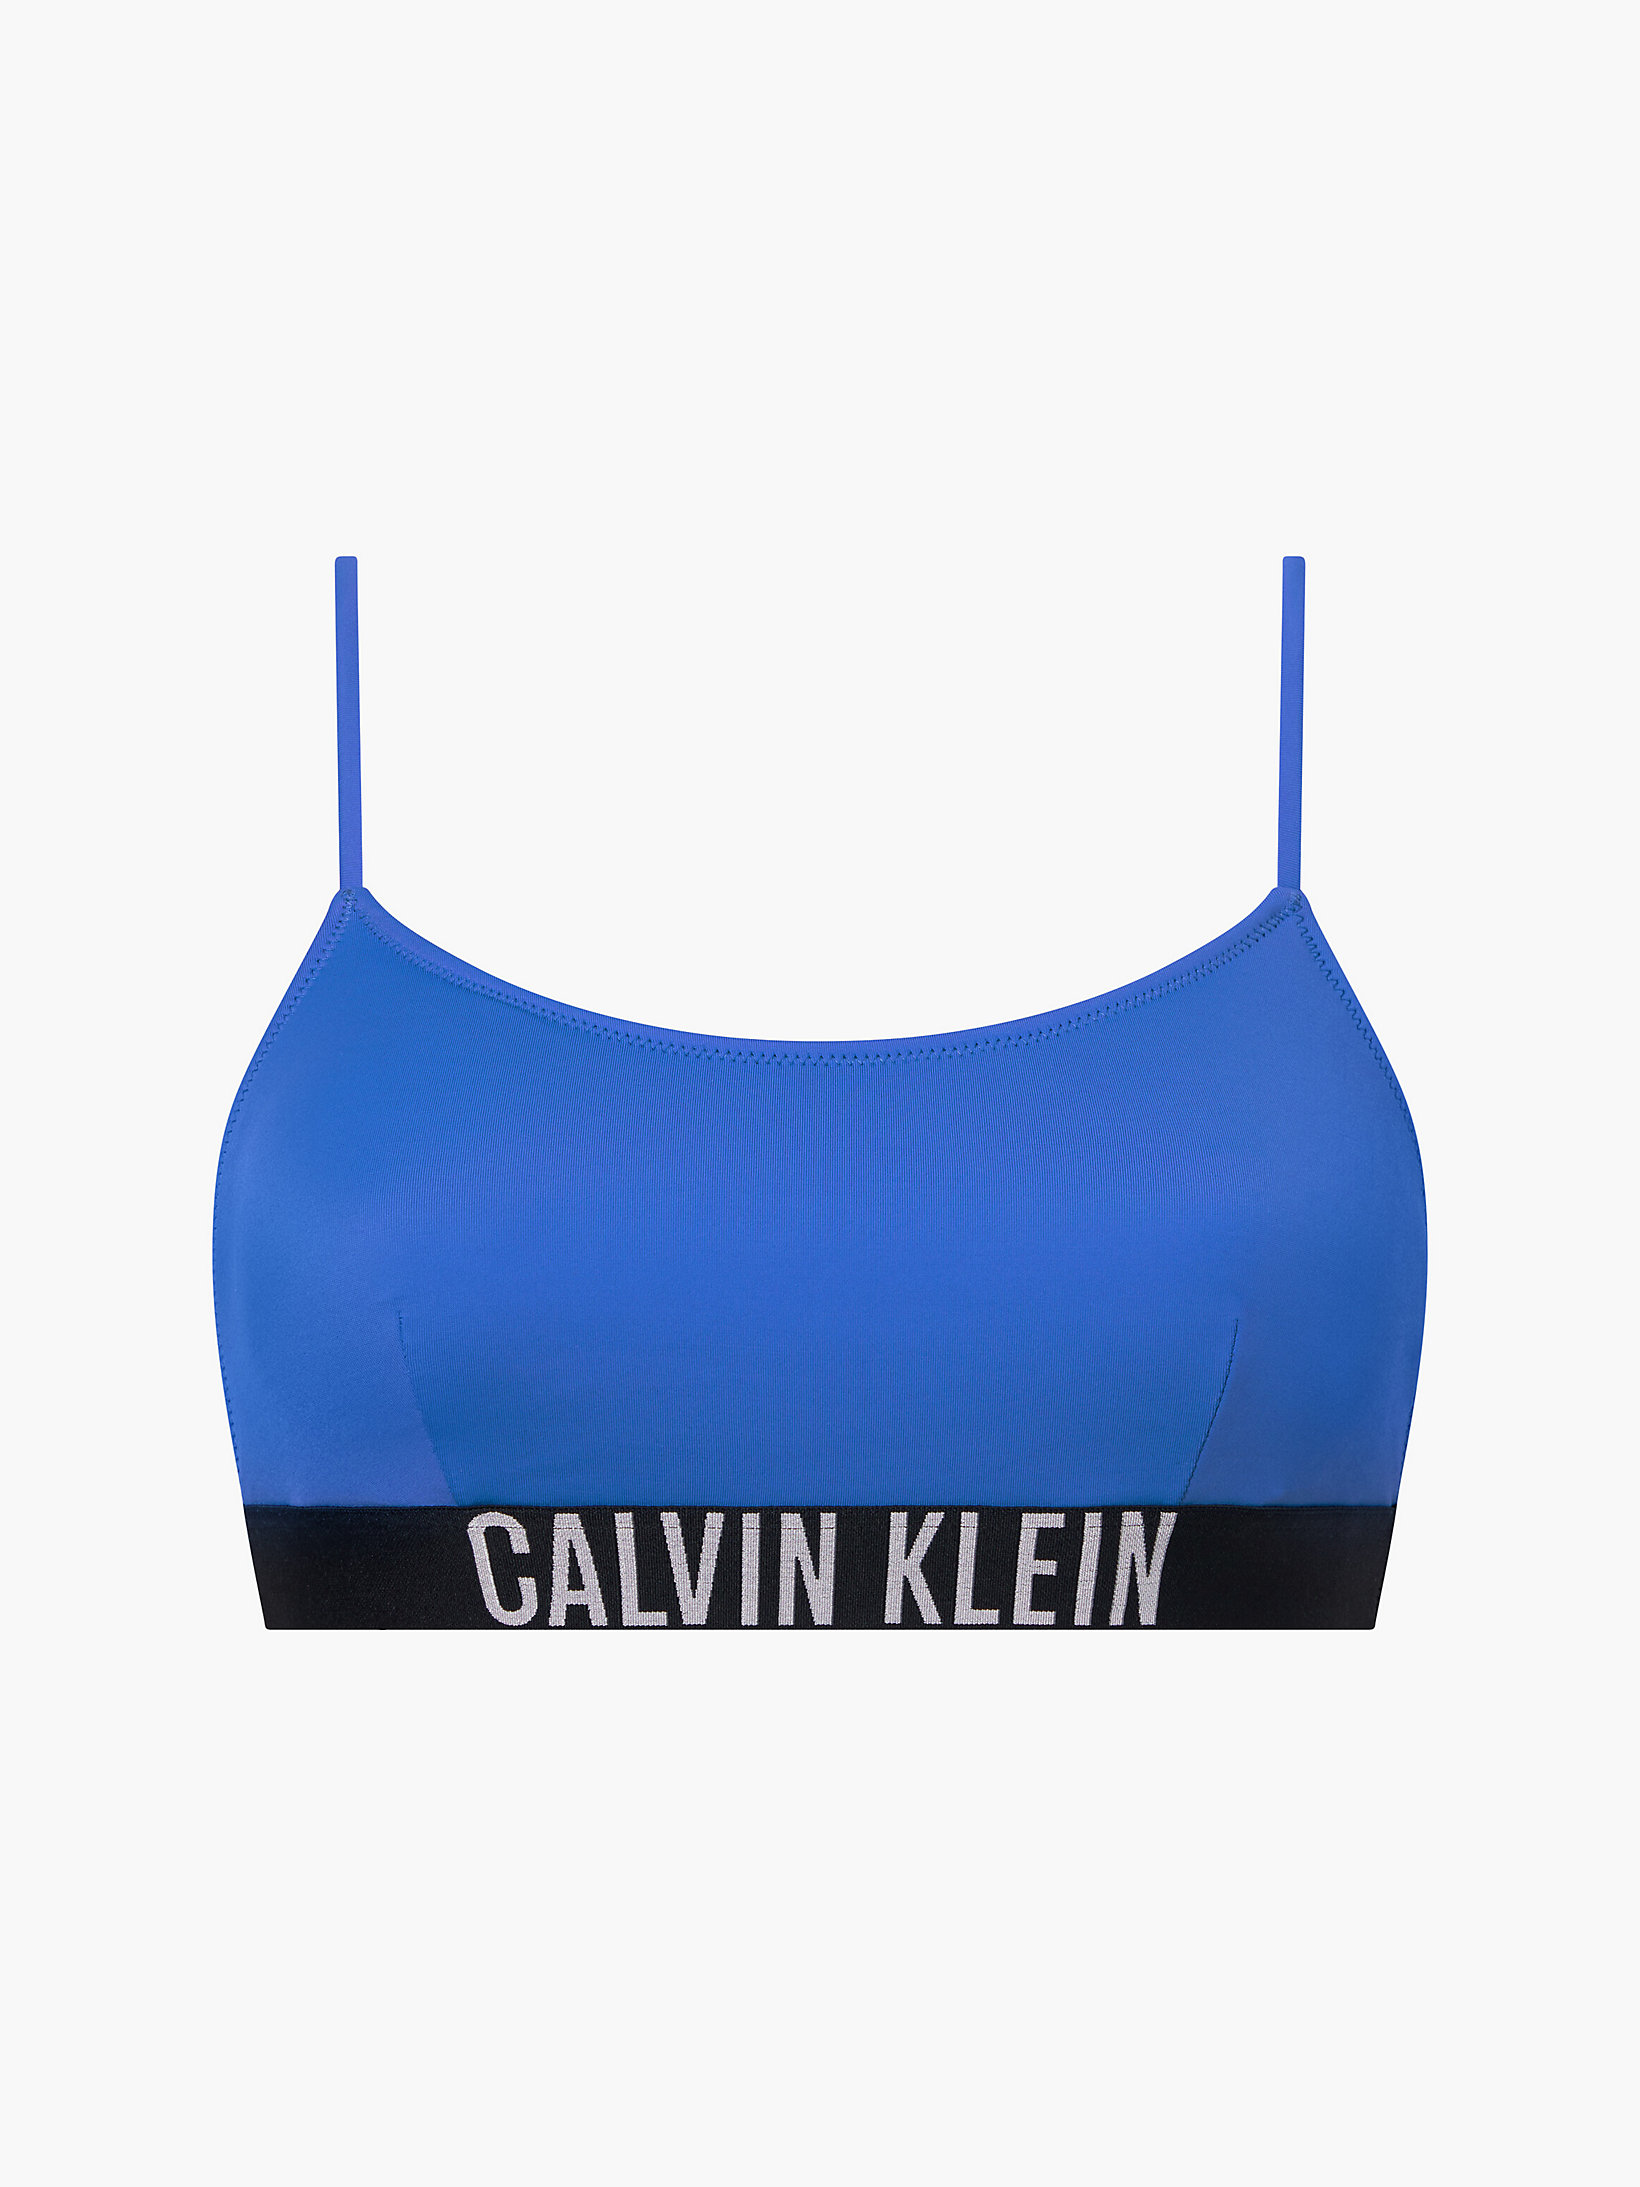 Wild Bluebell Bralette Bikini Top - Intense Power undefined women Calvin Klein